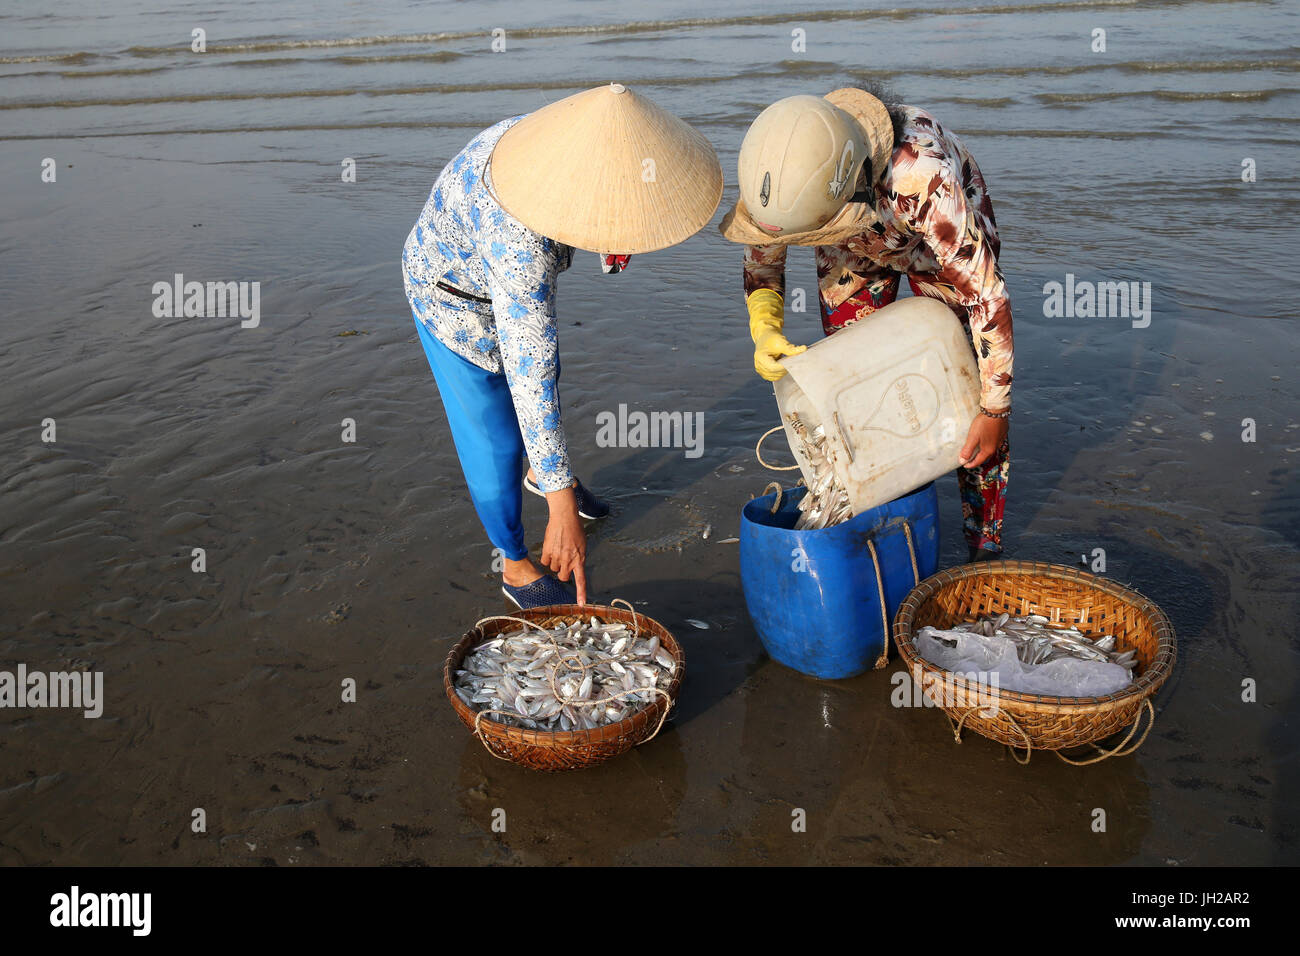 Vung Tau beach. Women sorting fishing catch.  Vietnam. Stock Photo